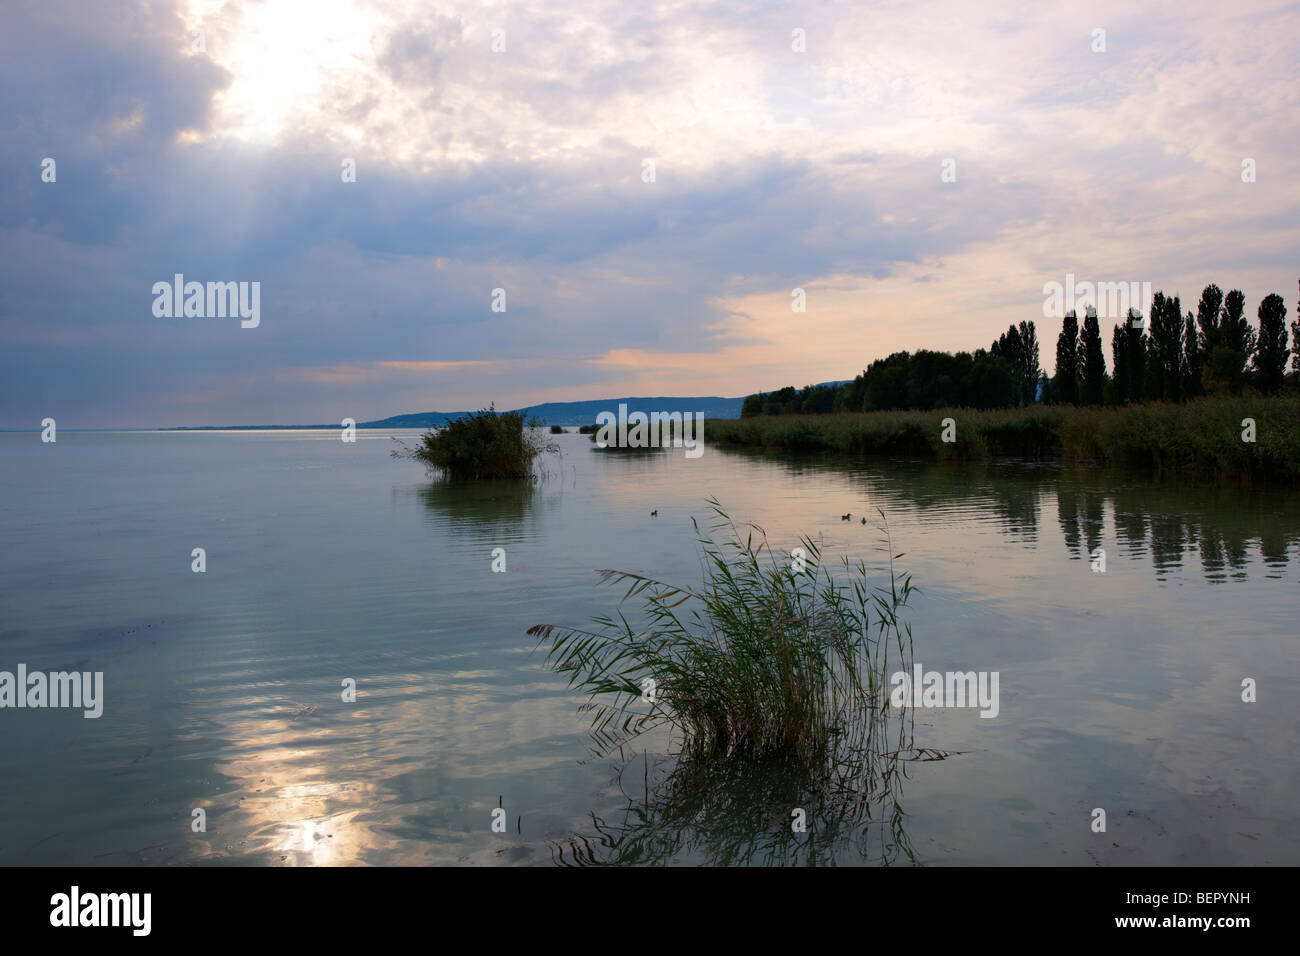 Lake Balaton from Szigliget marina at sunset - Hungary Stock Photo